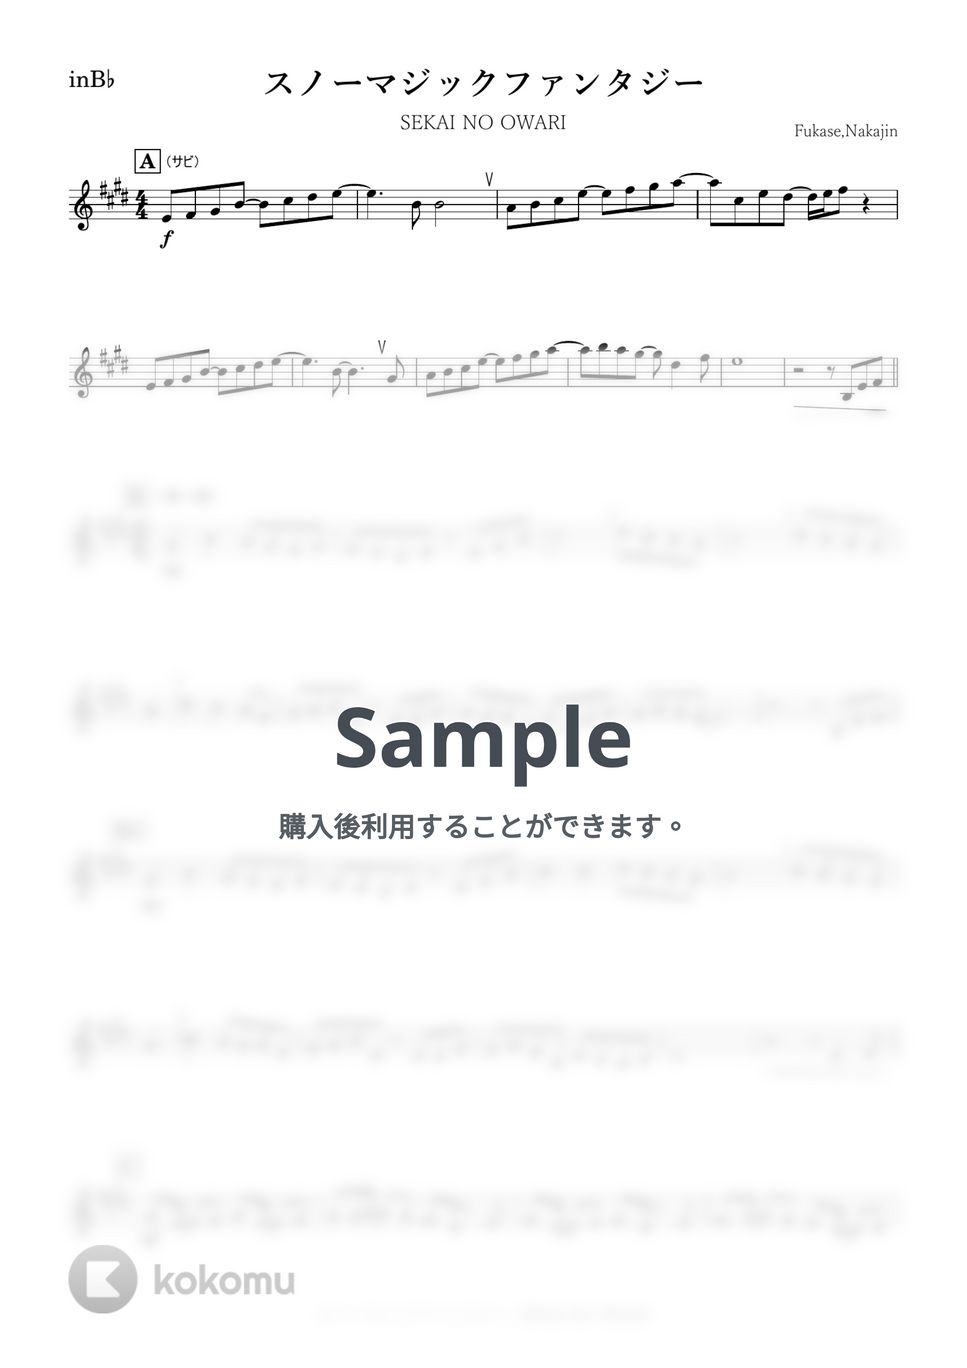 SEKAI NO OWARI - スノーマジックファンタジー (B♭) by kanamusic